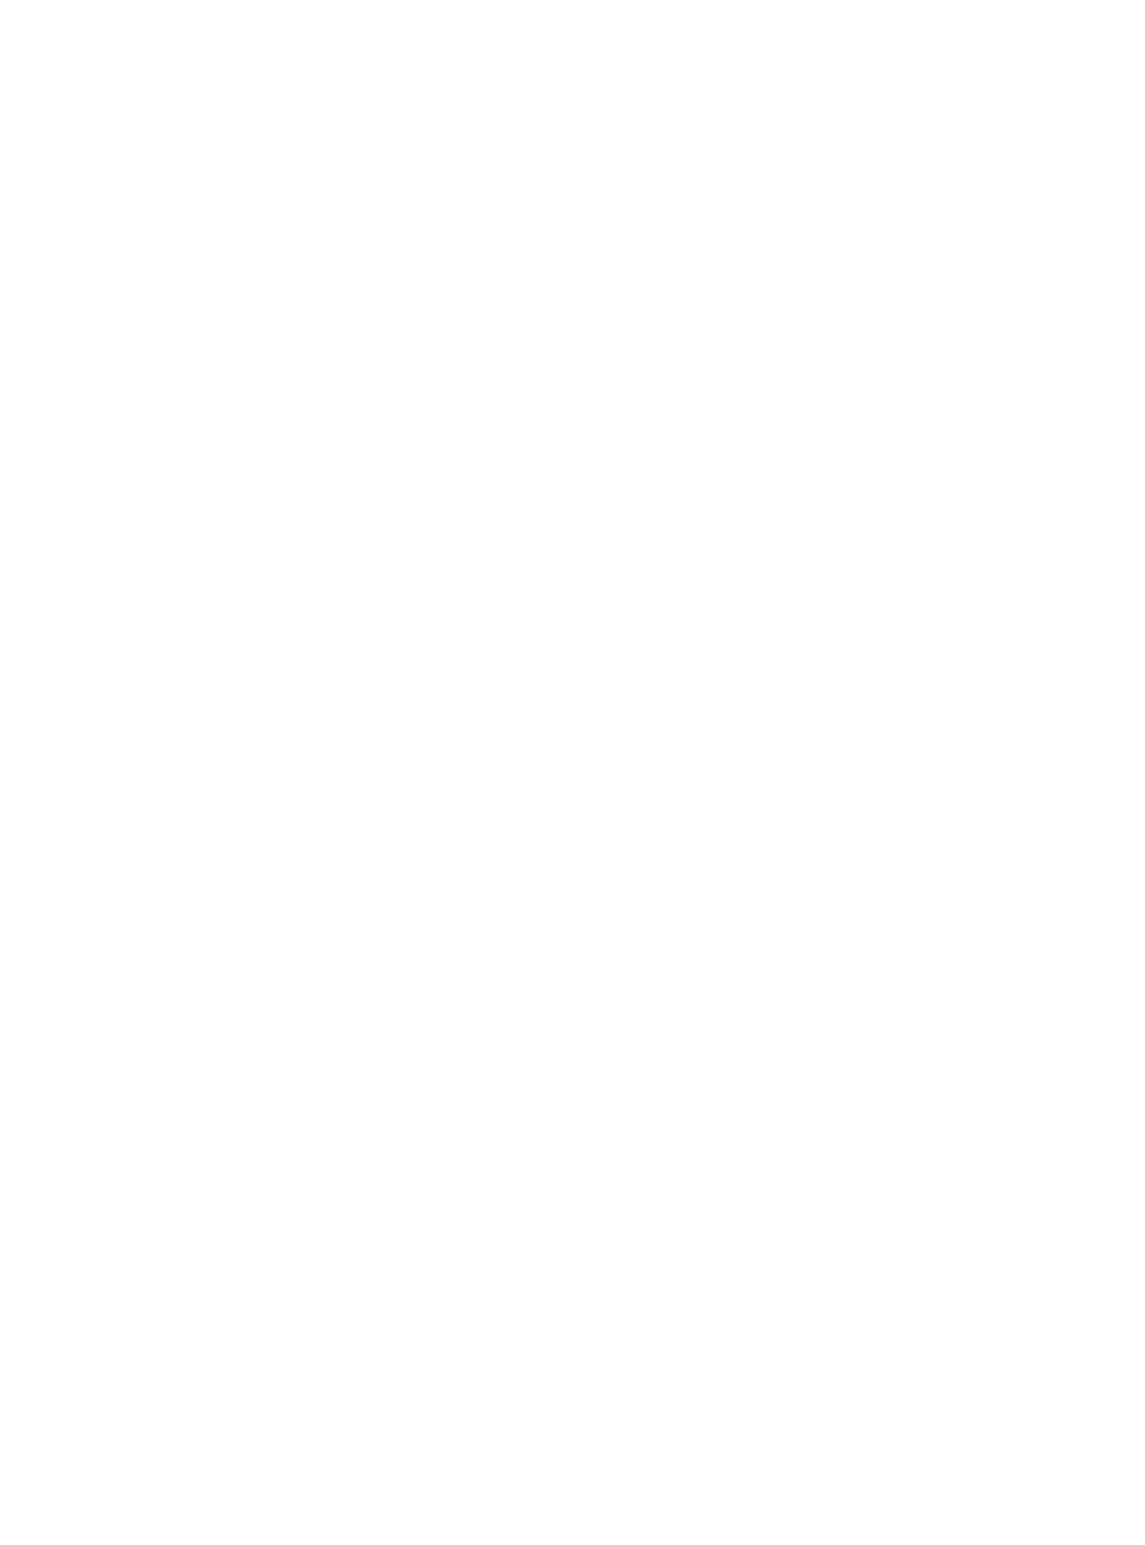 ESP Presents